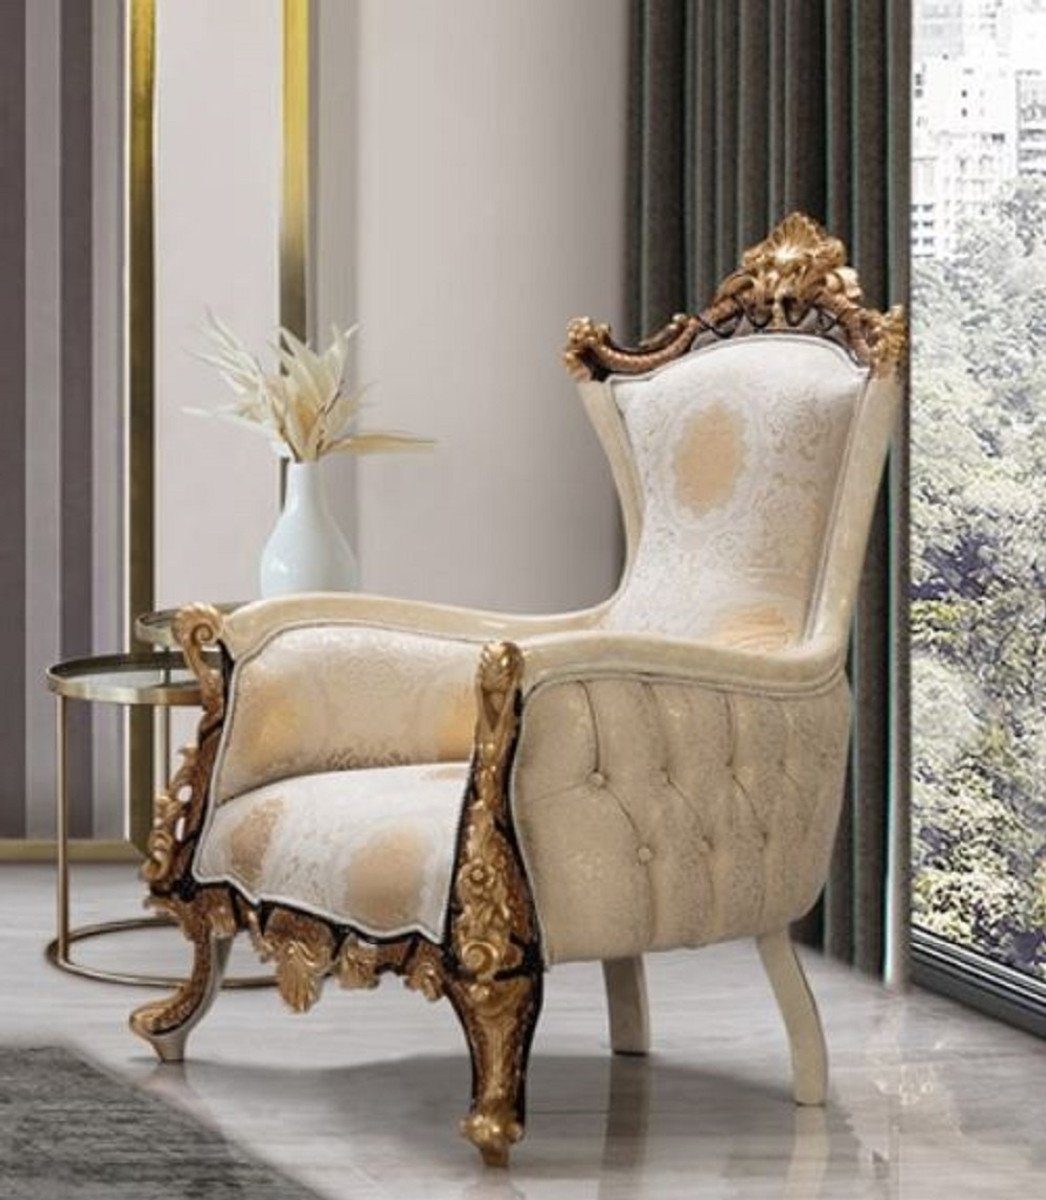 Gold / - Casa Muster Barock / Schwarz Casa Prunkvoller Weiß elegantem Luxus im Barock Luxus Sessel / Padrino Wohnzimmer mit Einrichtung Beige Sessel Creme Möbel - - - / Sessel Barockstil Wohnzimmer Möbel Padrino Barock